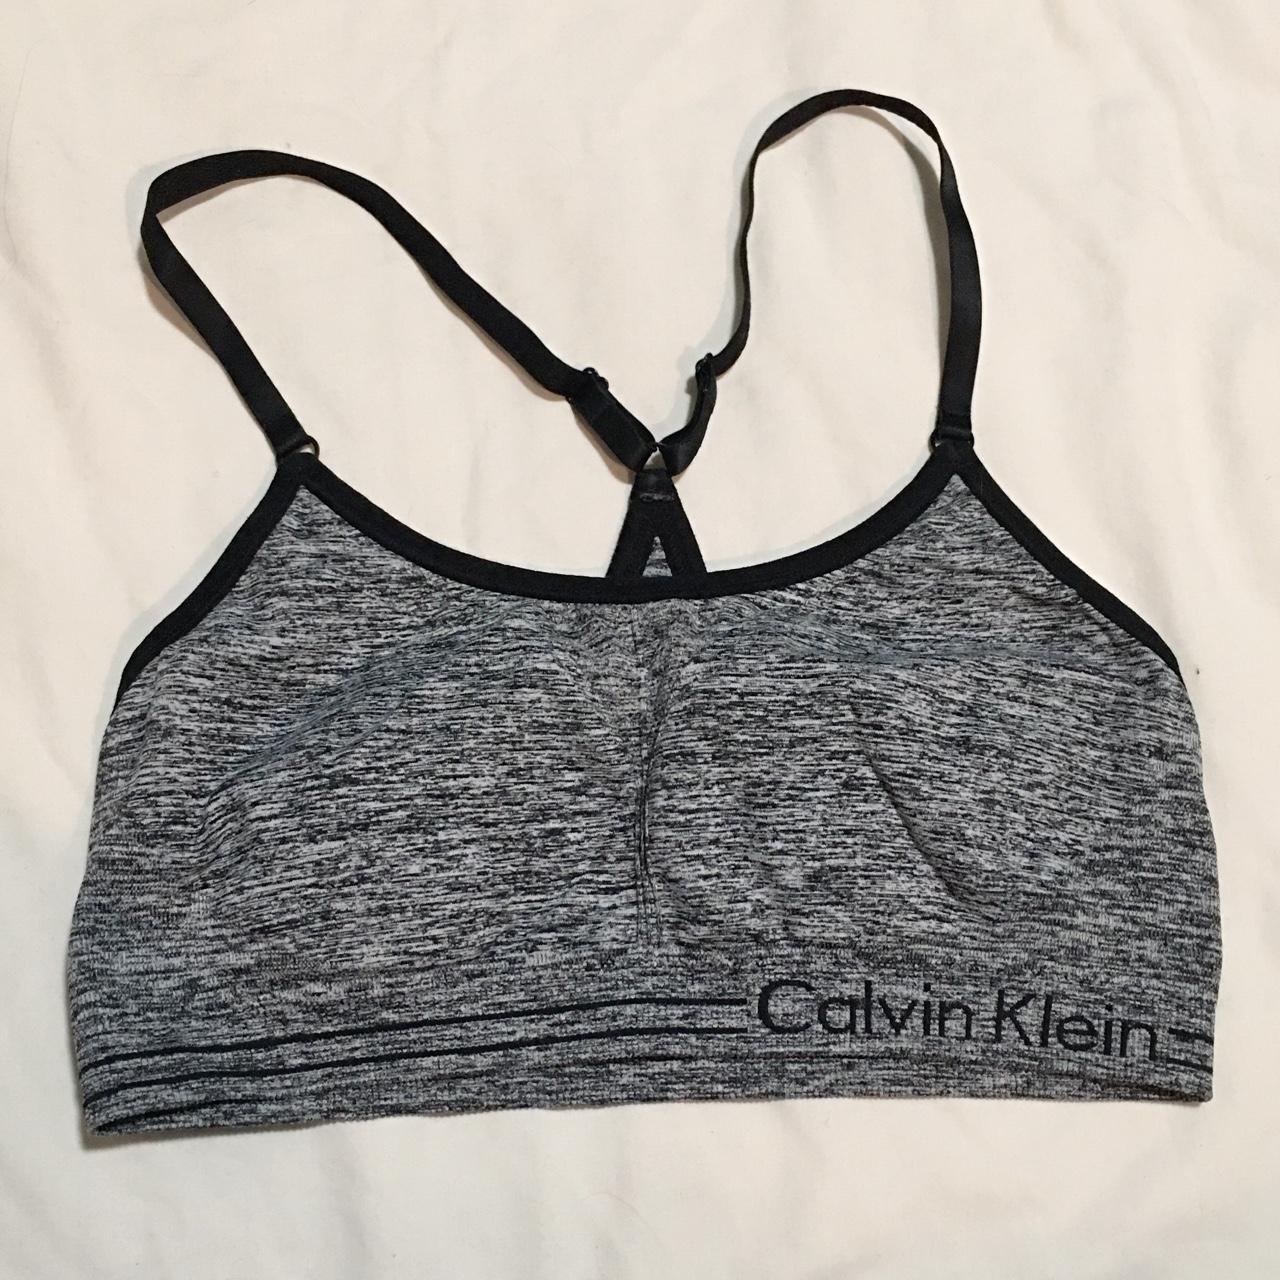 Calvin Klein sports bra no size tag, best fits - Depop